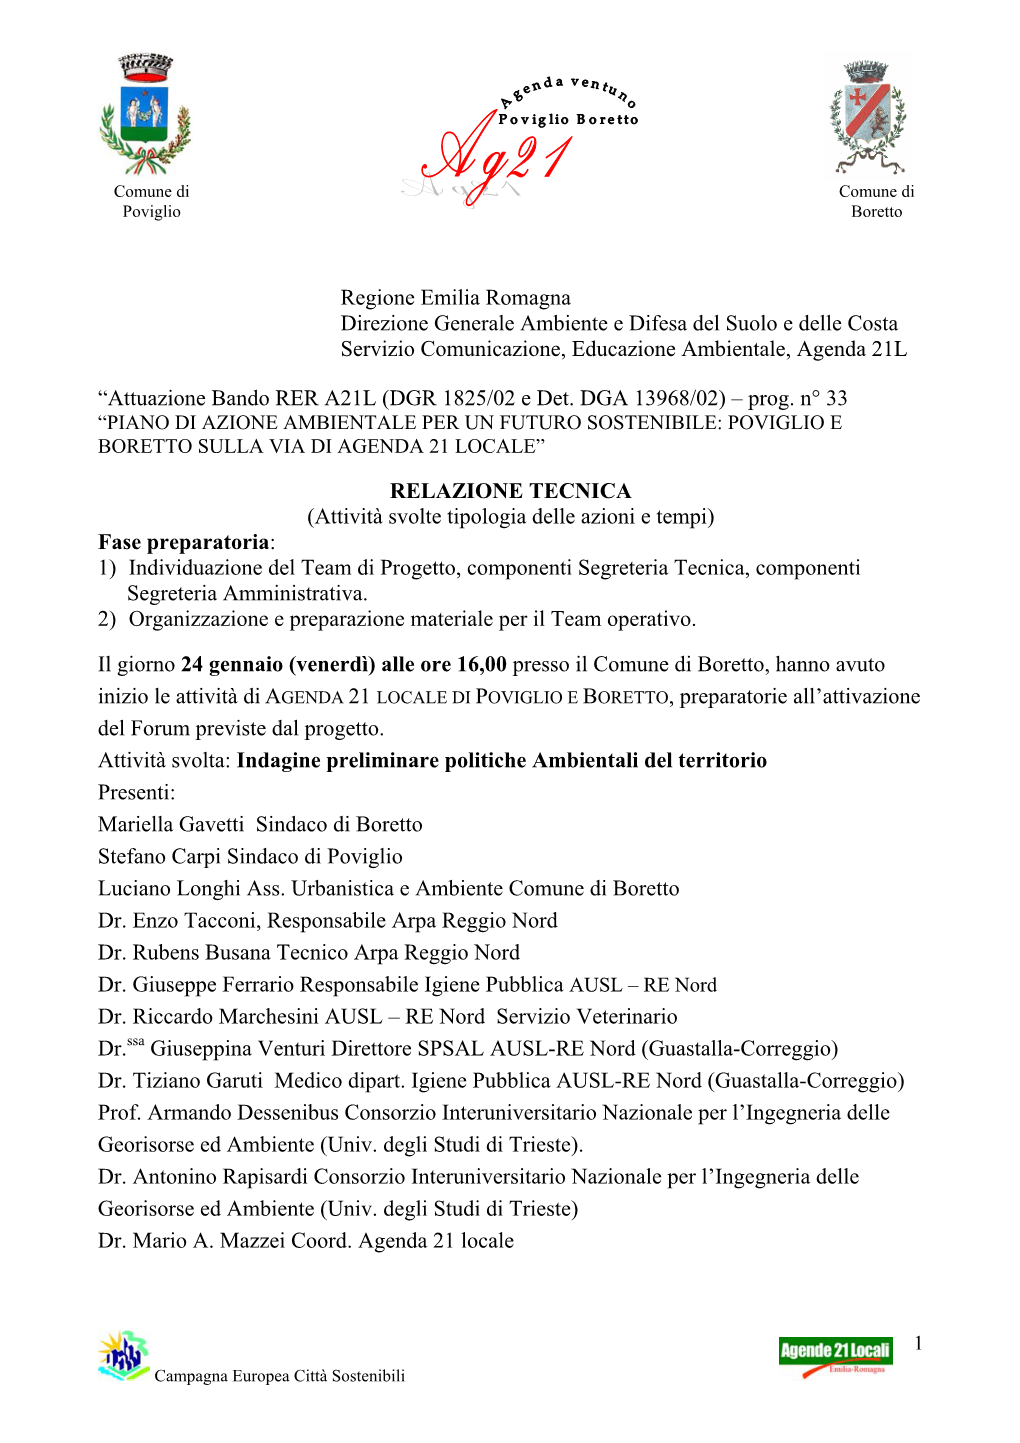 Regione Emilia Romagna Direzione Generale Ambiente E Difesa Del Suolo E Delle Costa Servizio Comunicazione, Educazione Ambientale, Agenda 21L